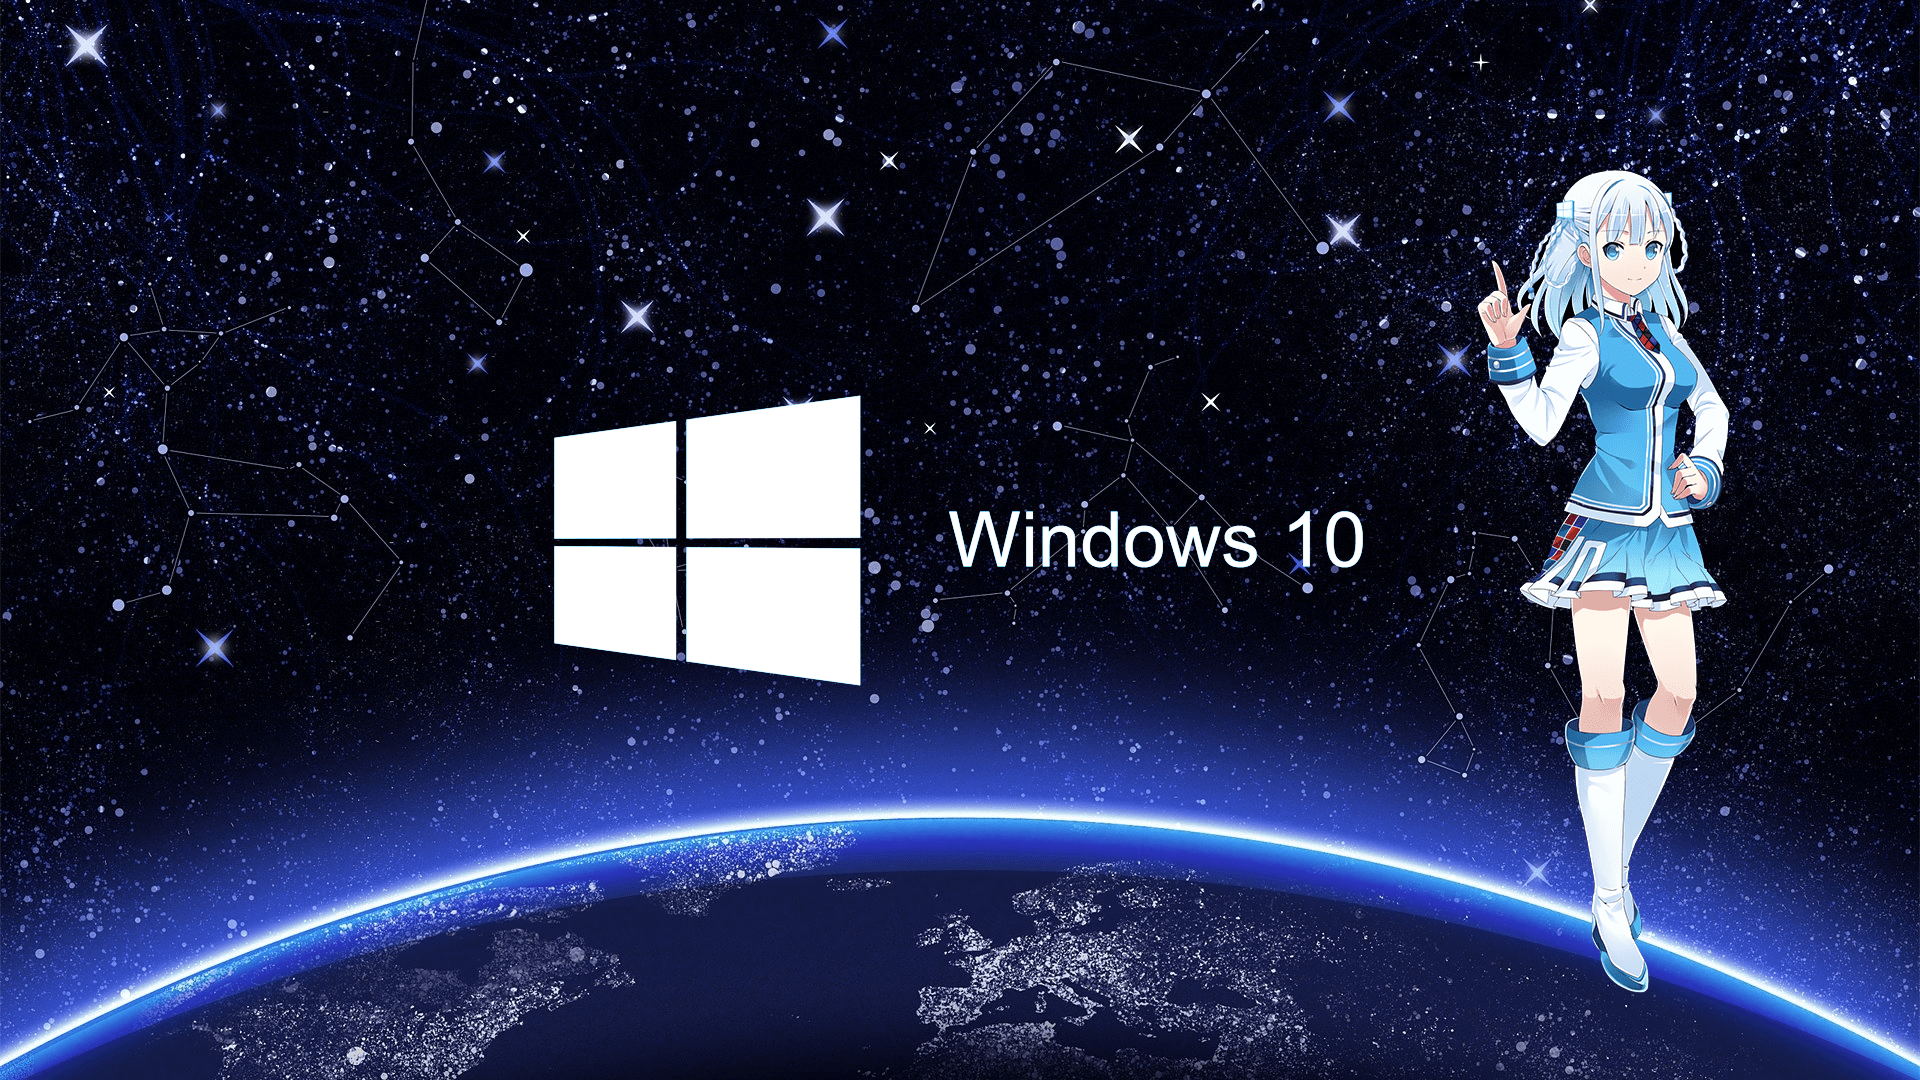 Windows 10 Anime Wallpapers: Bạn đang tìm kiếm một bộ sưu tập hình nền anime chất lượng cao cho Windows 10 của mình? Hãy cùng chúng tôi khám phá những tác phẩm nghệ thuật tuyệt đẹp với những nhân vật anime đầy sức sống và tinh tế. Những bức hình nền này chắc chắn sẽ khiến desktop của bạn trở nên tươi sáng và đầy năng lượng.